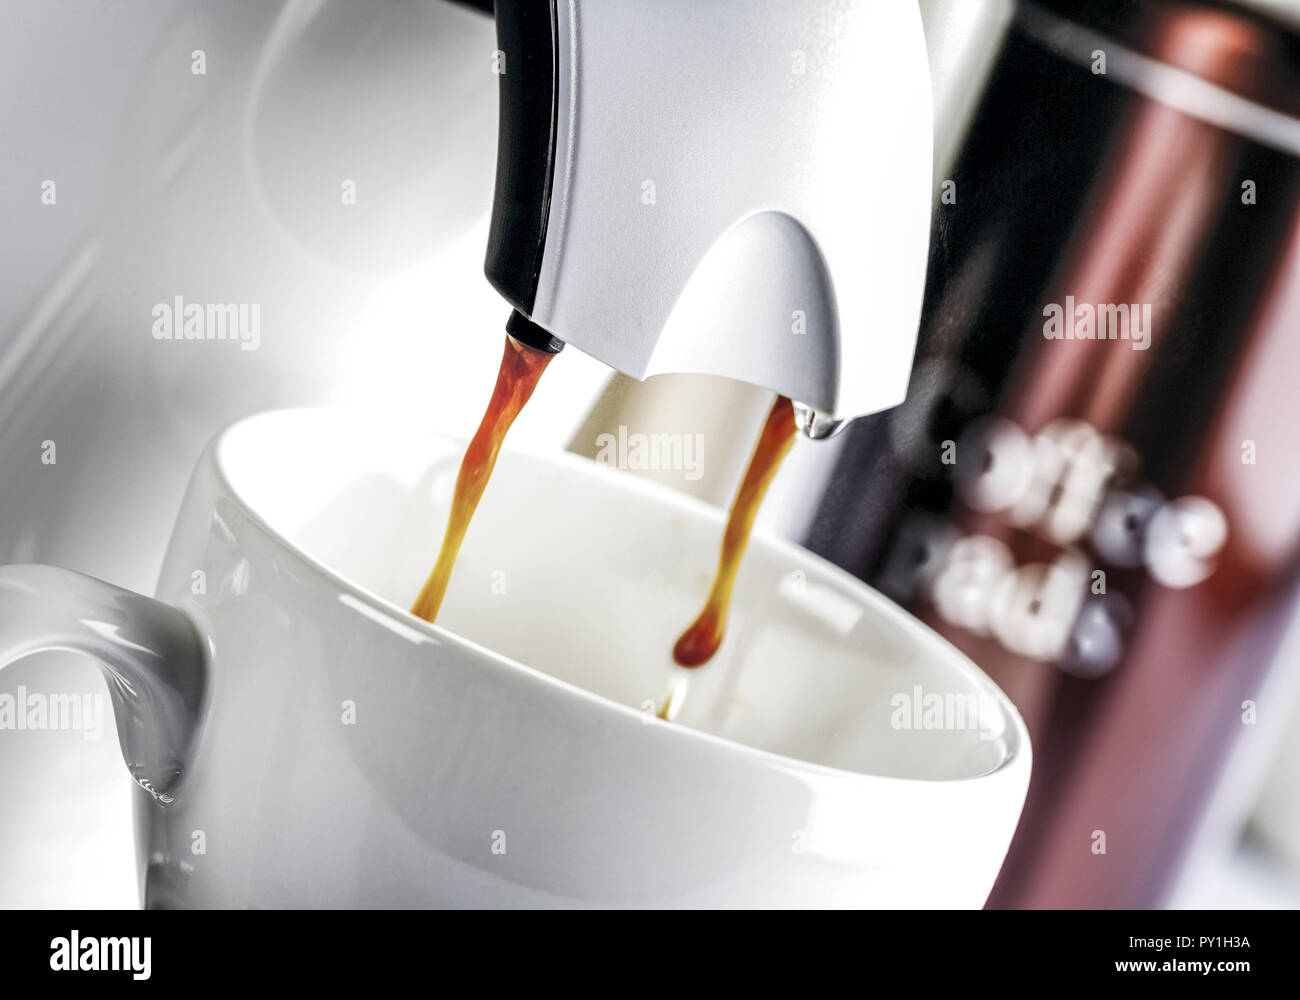 Kaffee laeuft aus Kaffeeautomat in Tasse Stock Photo